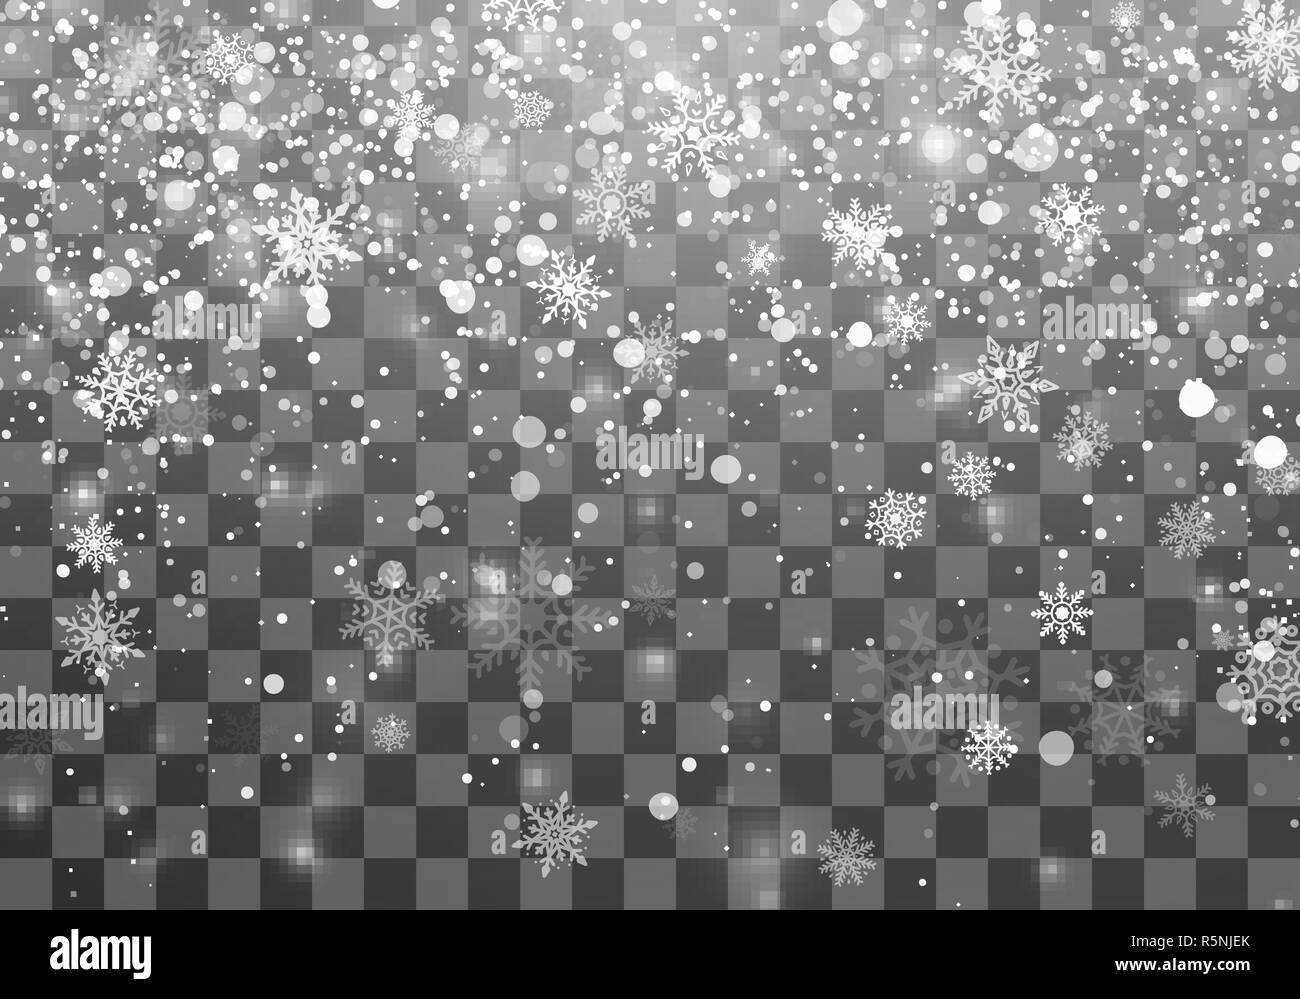 Weihnachten Schneefall Vorlage. Fallende Schneeflocken auf transparenten Hintergrund. Weihnachten Urlaub Hintergrund. Vector Illustration Stock Vektor